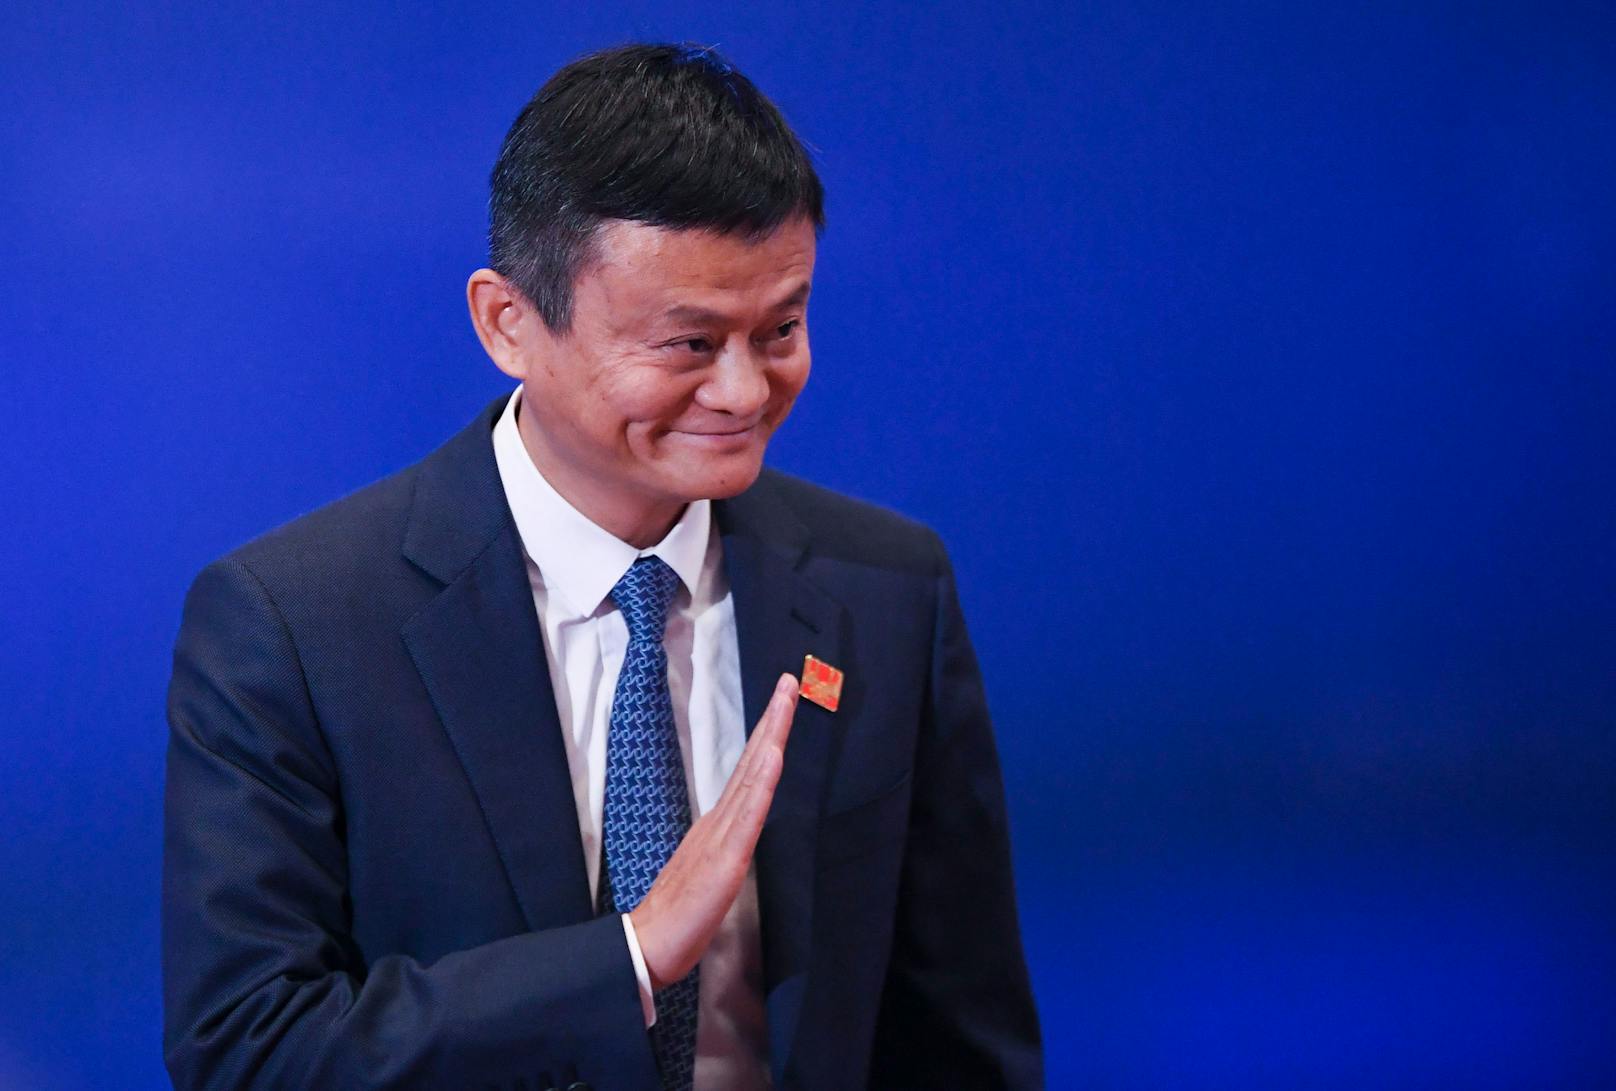 Jack Ma ist wieder aufgetaucht - er zeigte sich während einer Online-Veranstaltung.